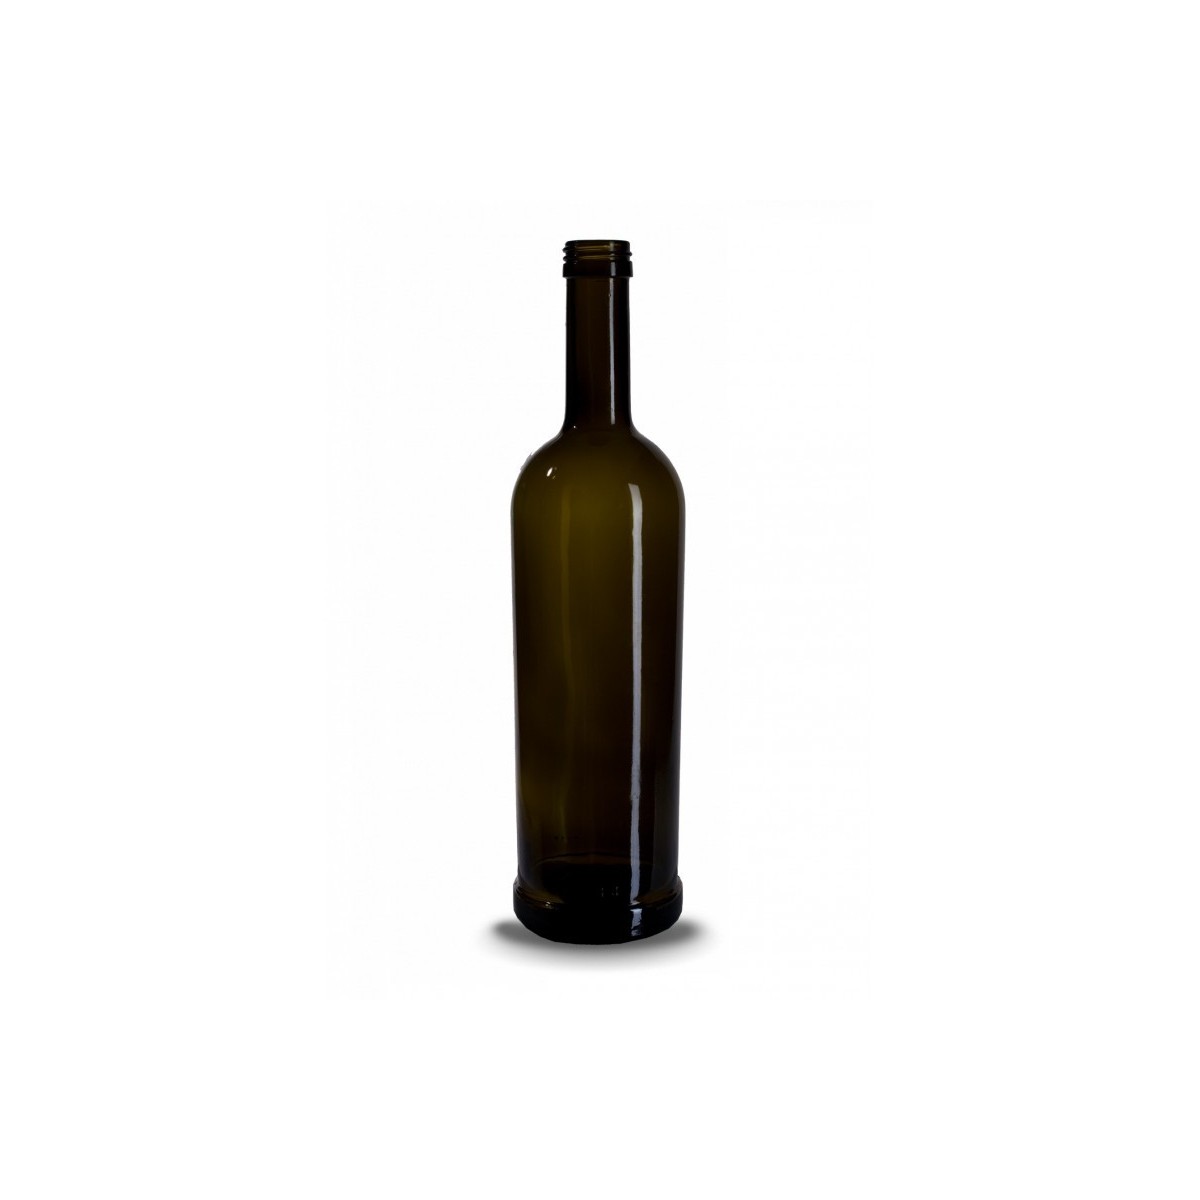 Stiklinis butelis aliejui European Food 0,75 l. Paletė 840 buteliai